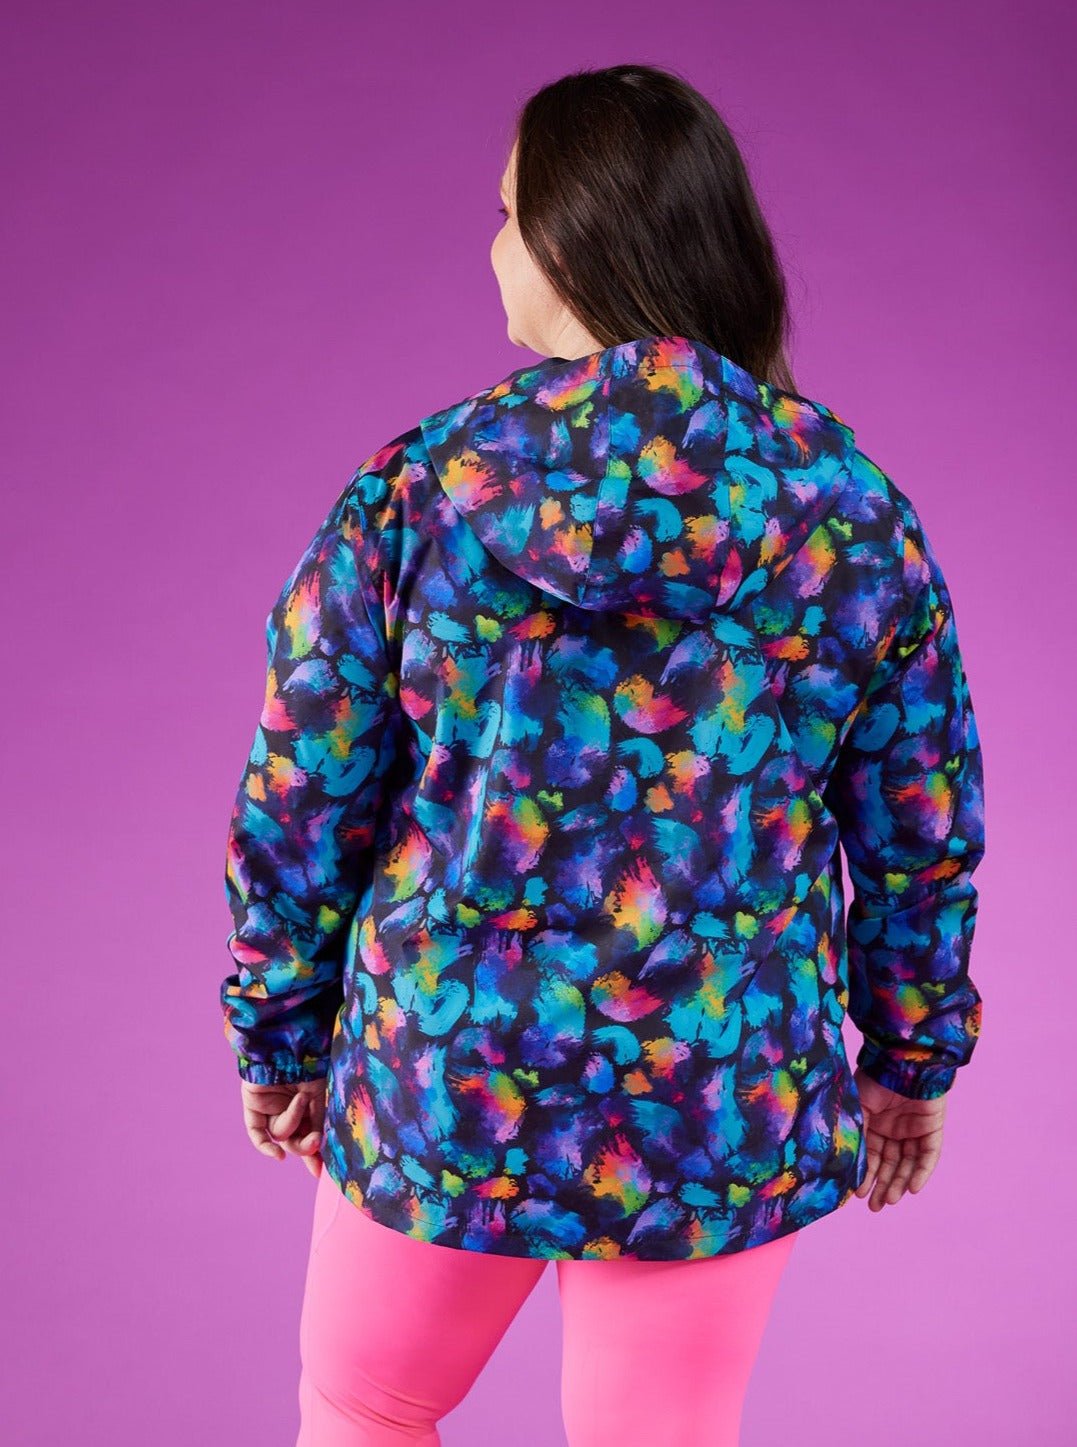 Rainbow Splatter Spray Jackets - Adults - leopard print spray jacket